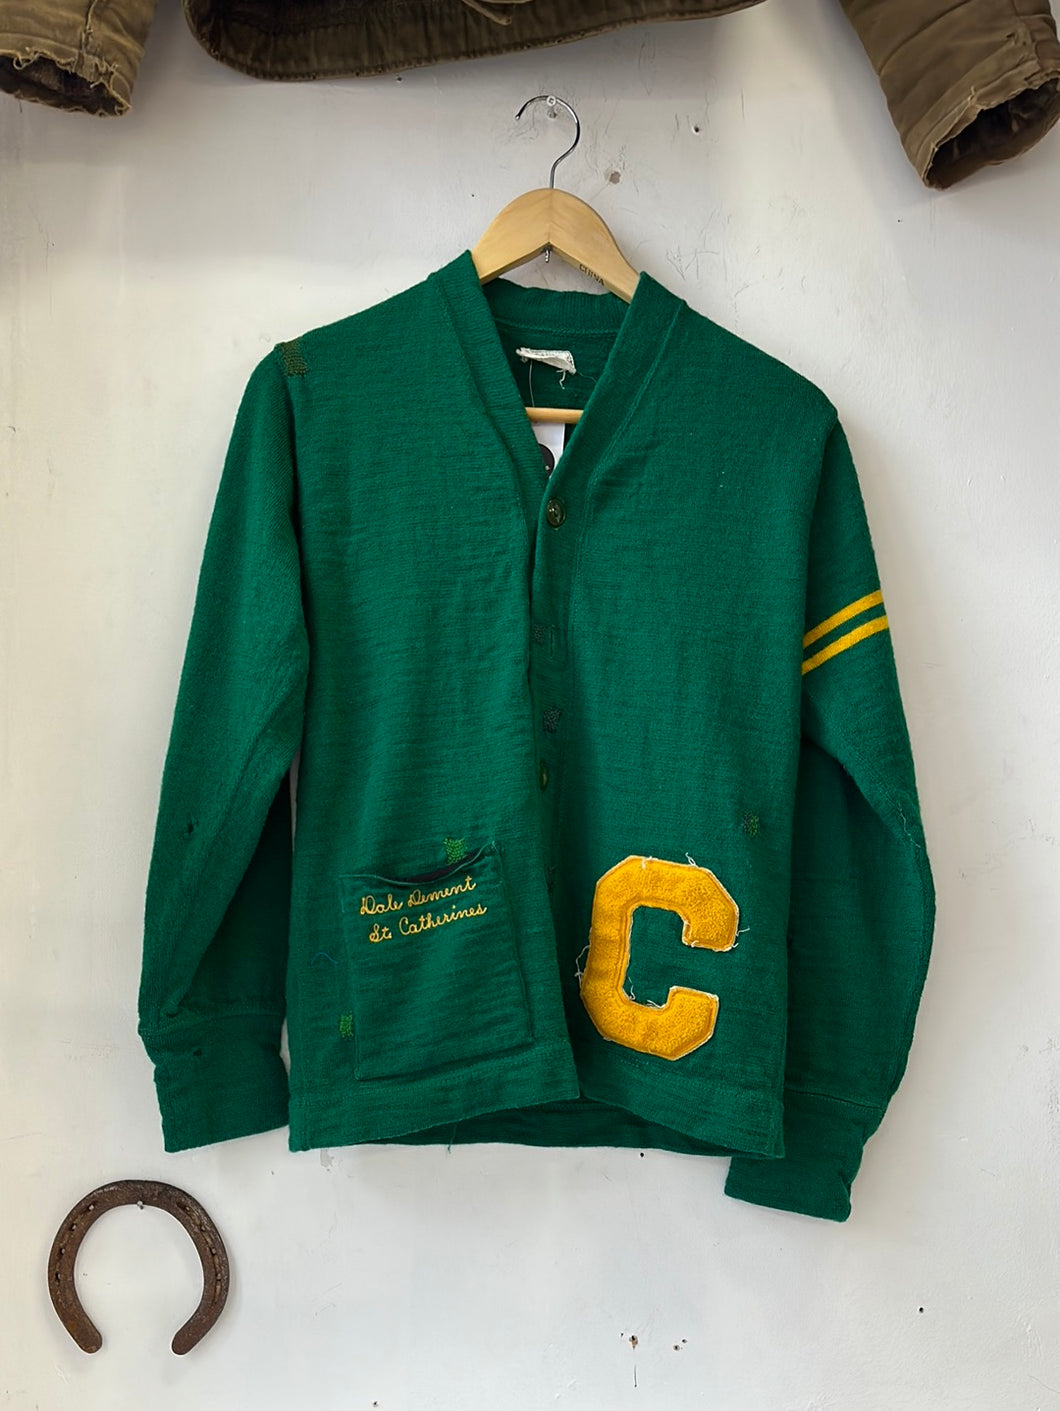 1950s/60s Darned School Sweater Letterman